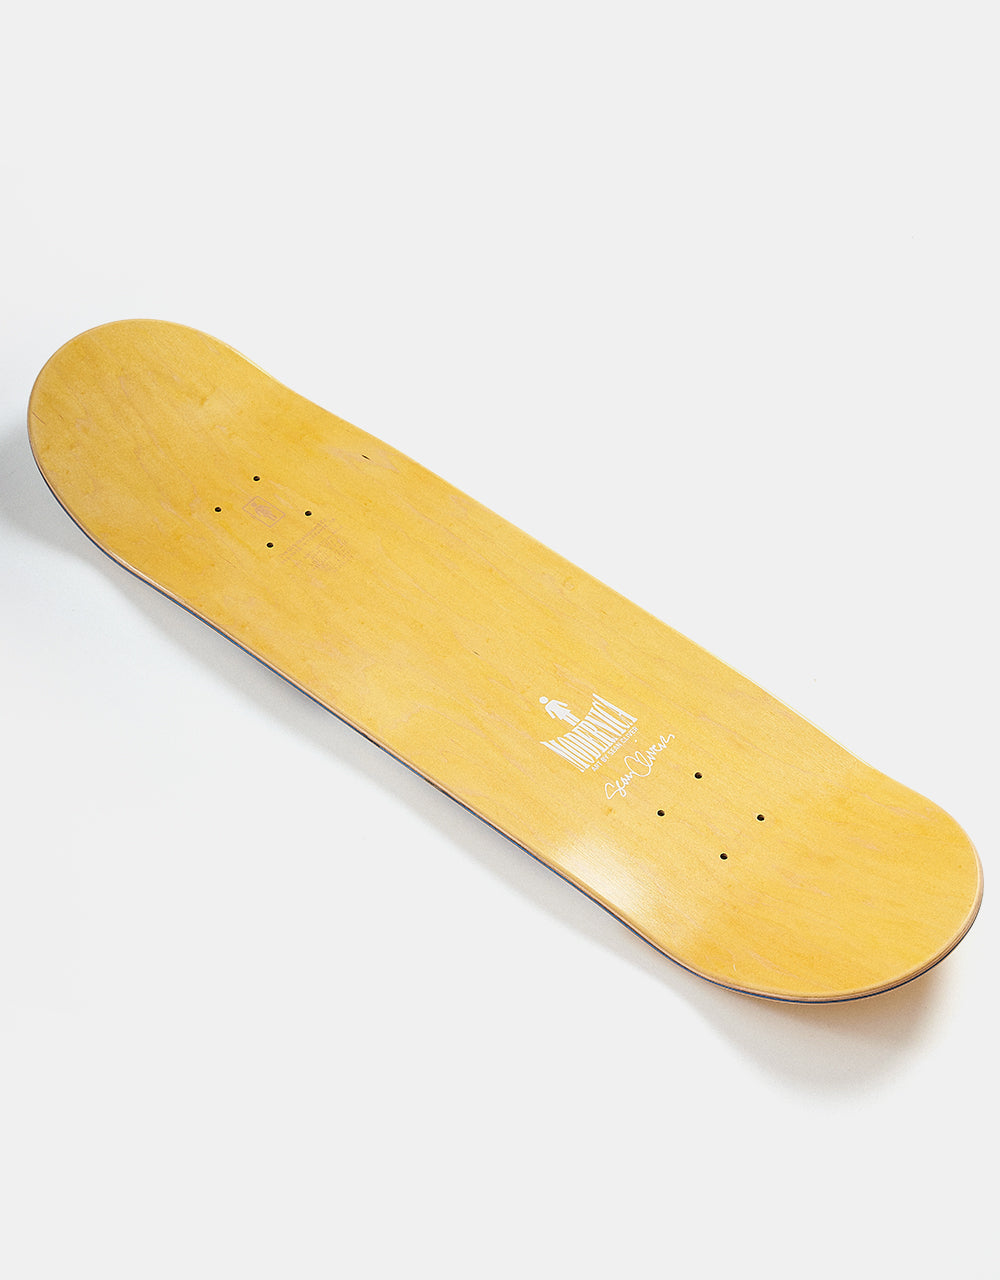 Girl Bannerot Modernica OG Skateboard Deck